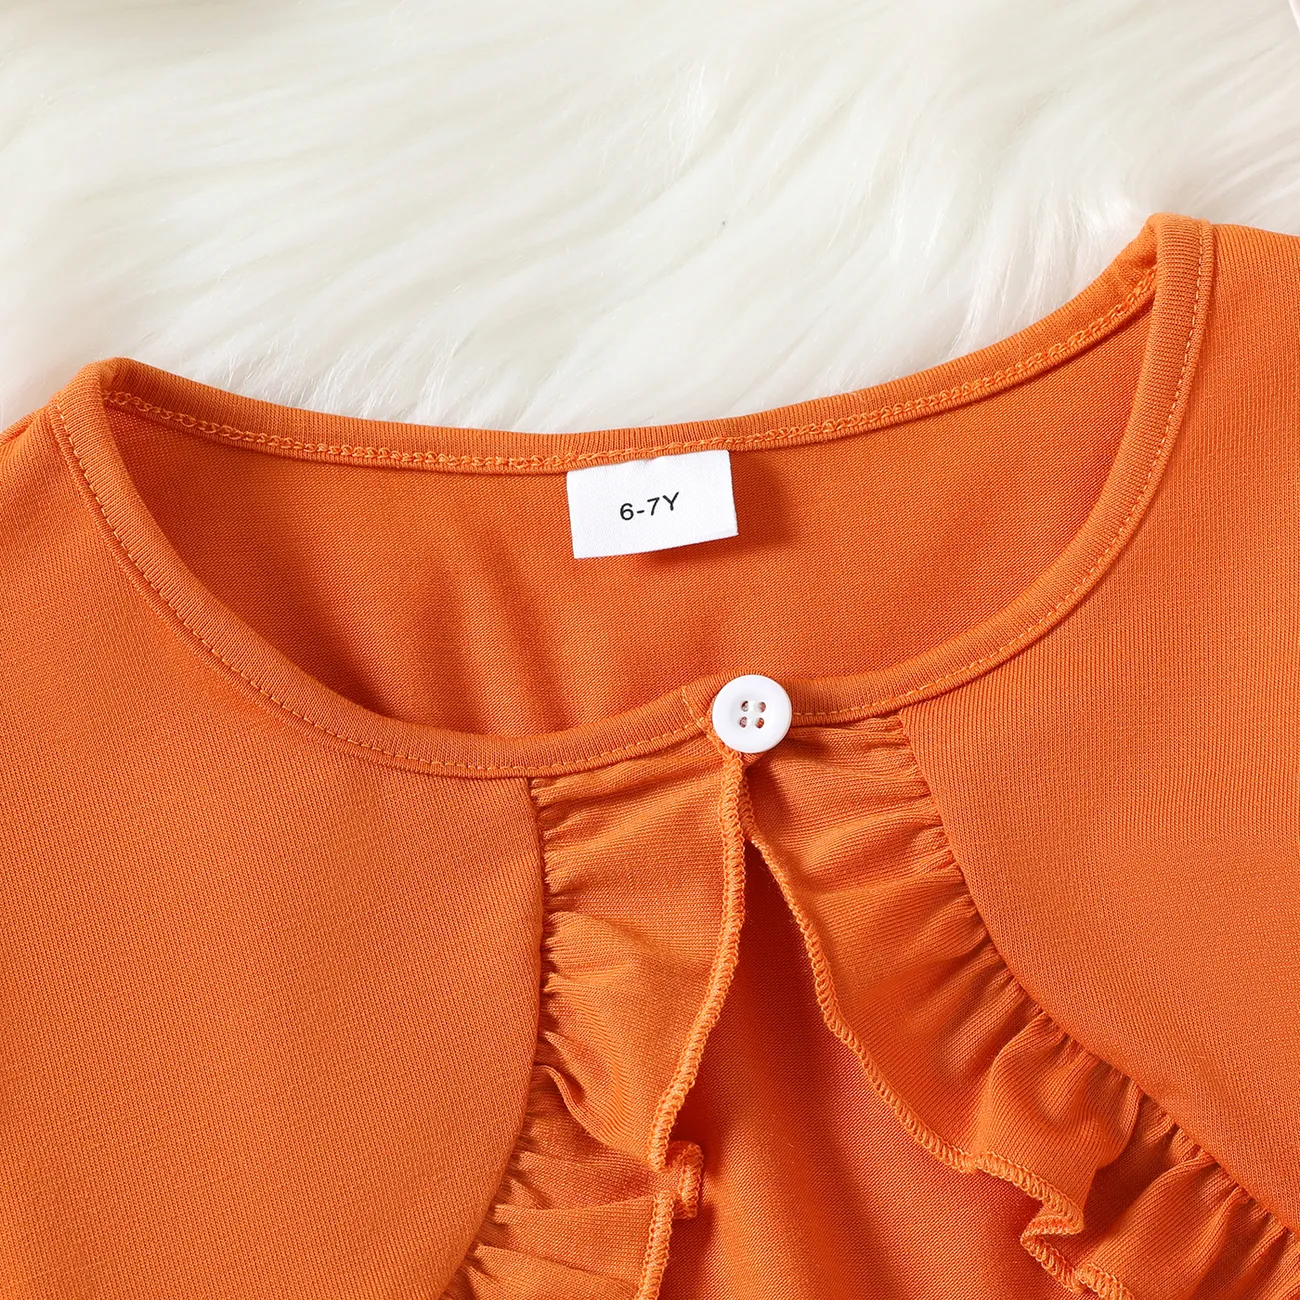 2pcs Kid Girl Floral Print Sleeveless Dress and Ruffled Long-sleeve Orange Cardigan Set KHAKI- big image 1